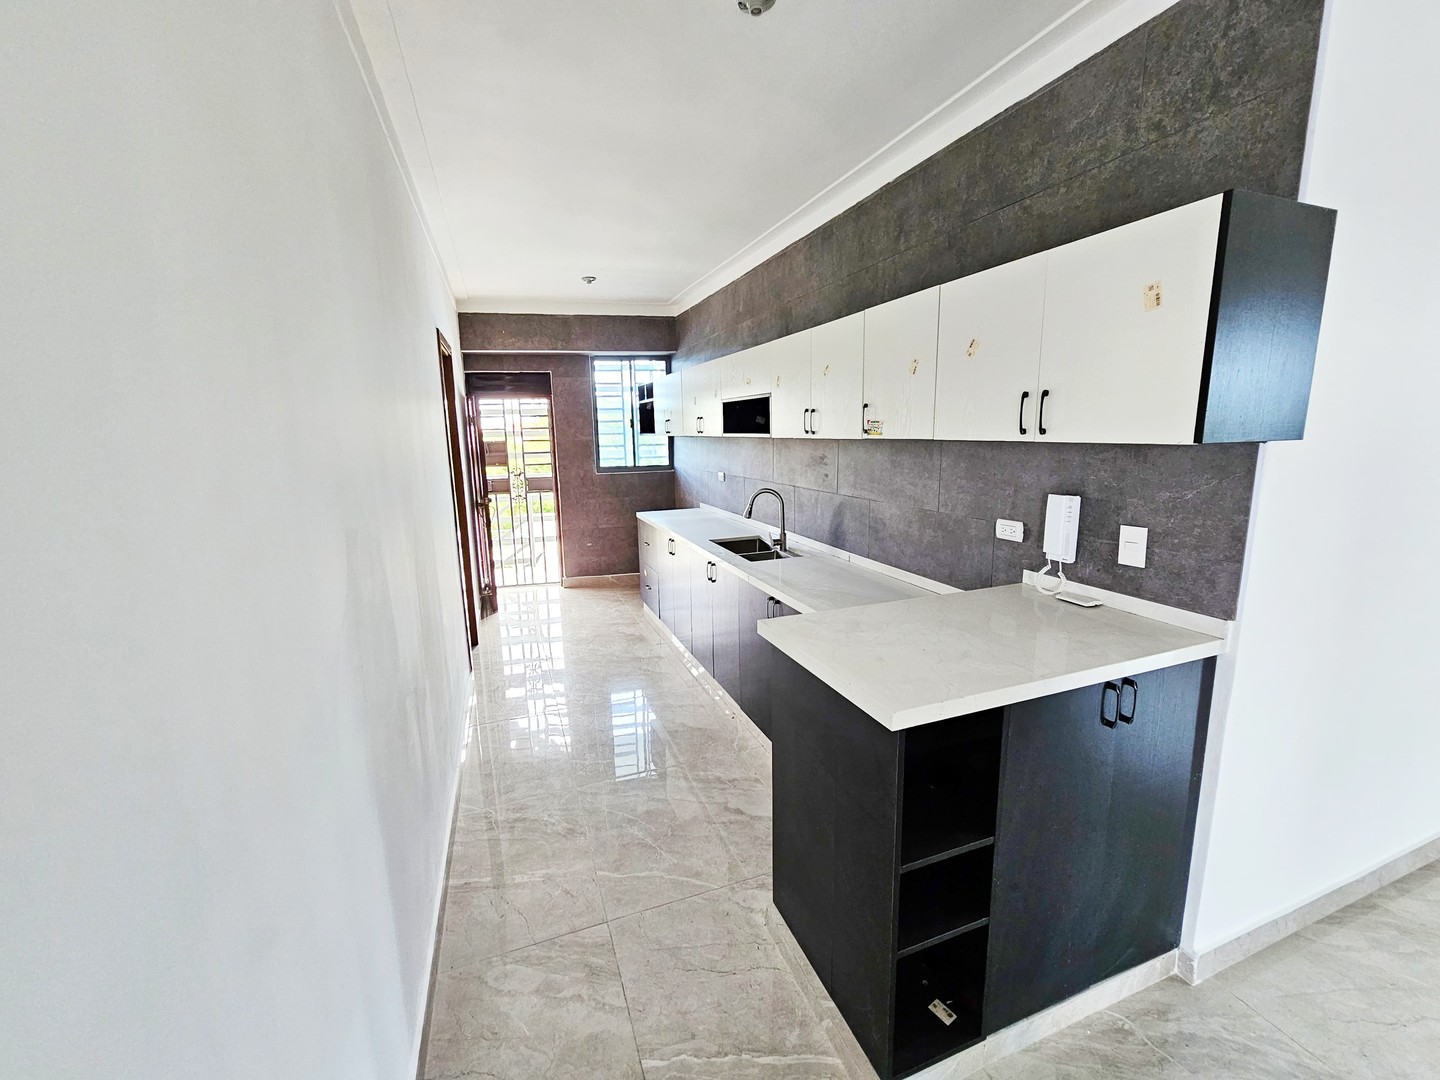 apartamentos - Apartamento NUEVO en Ensanche Paraíso.

Precio:RD$10,000,000.

- 136mt2 en total 3